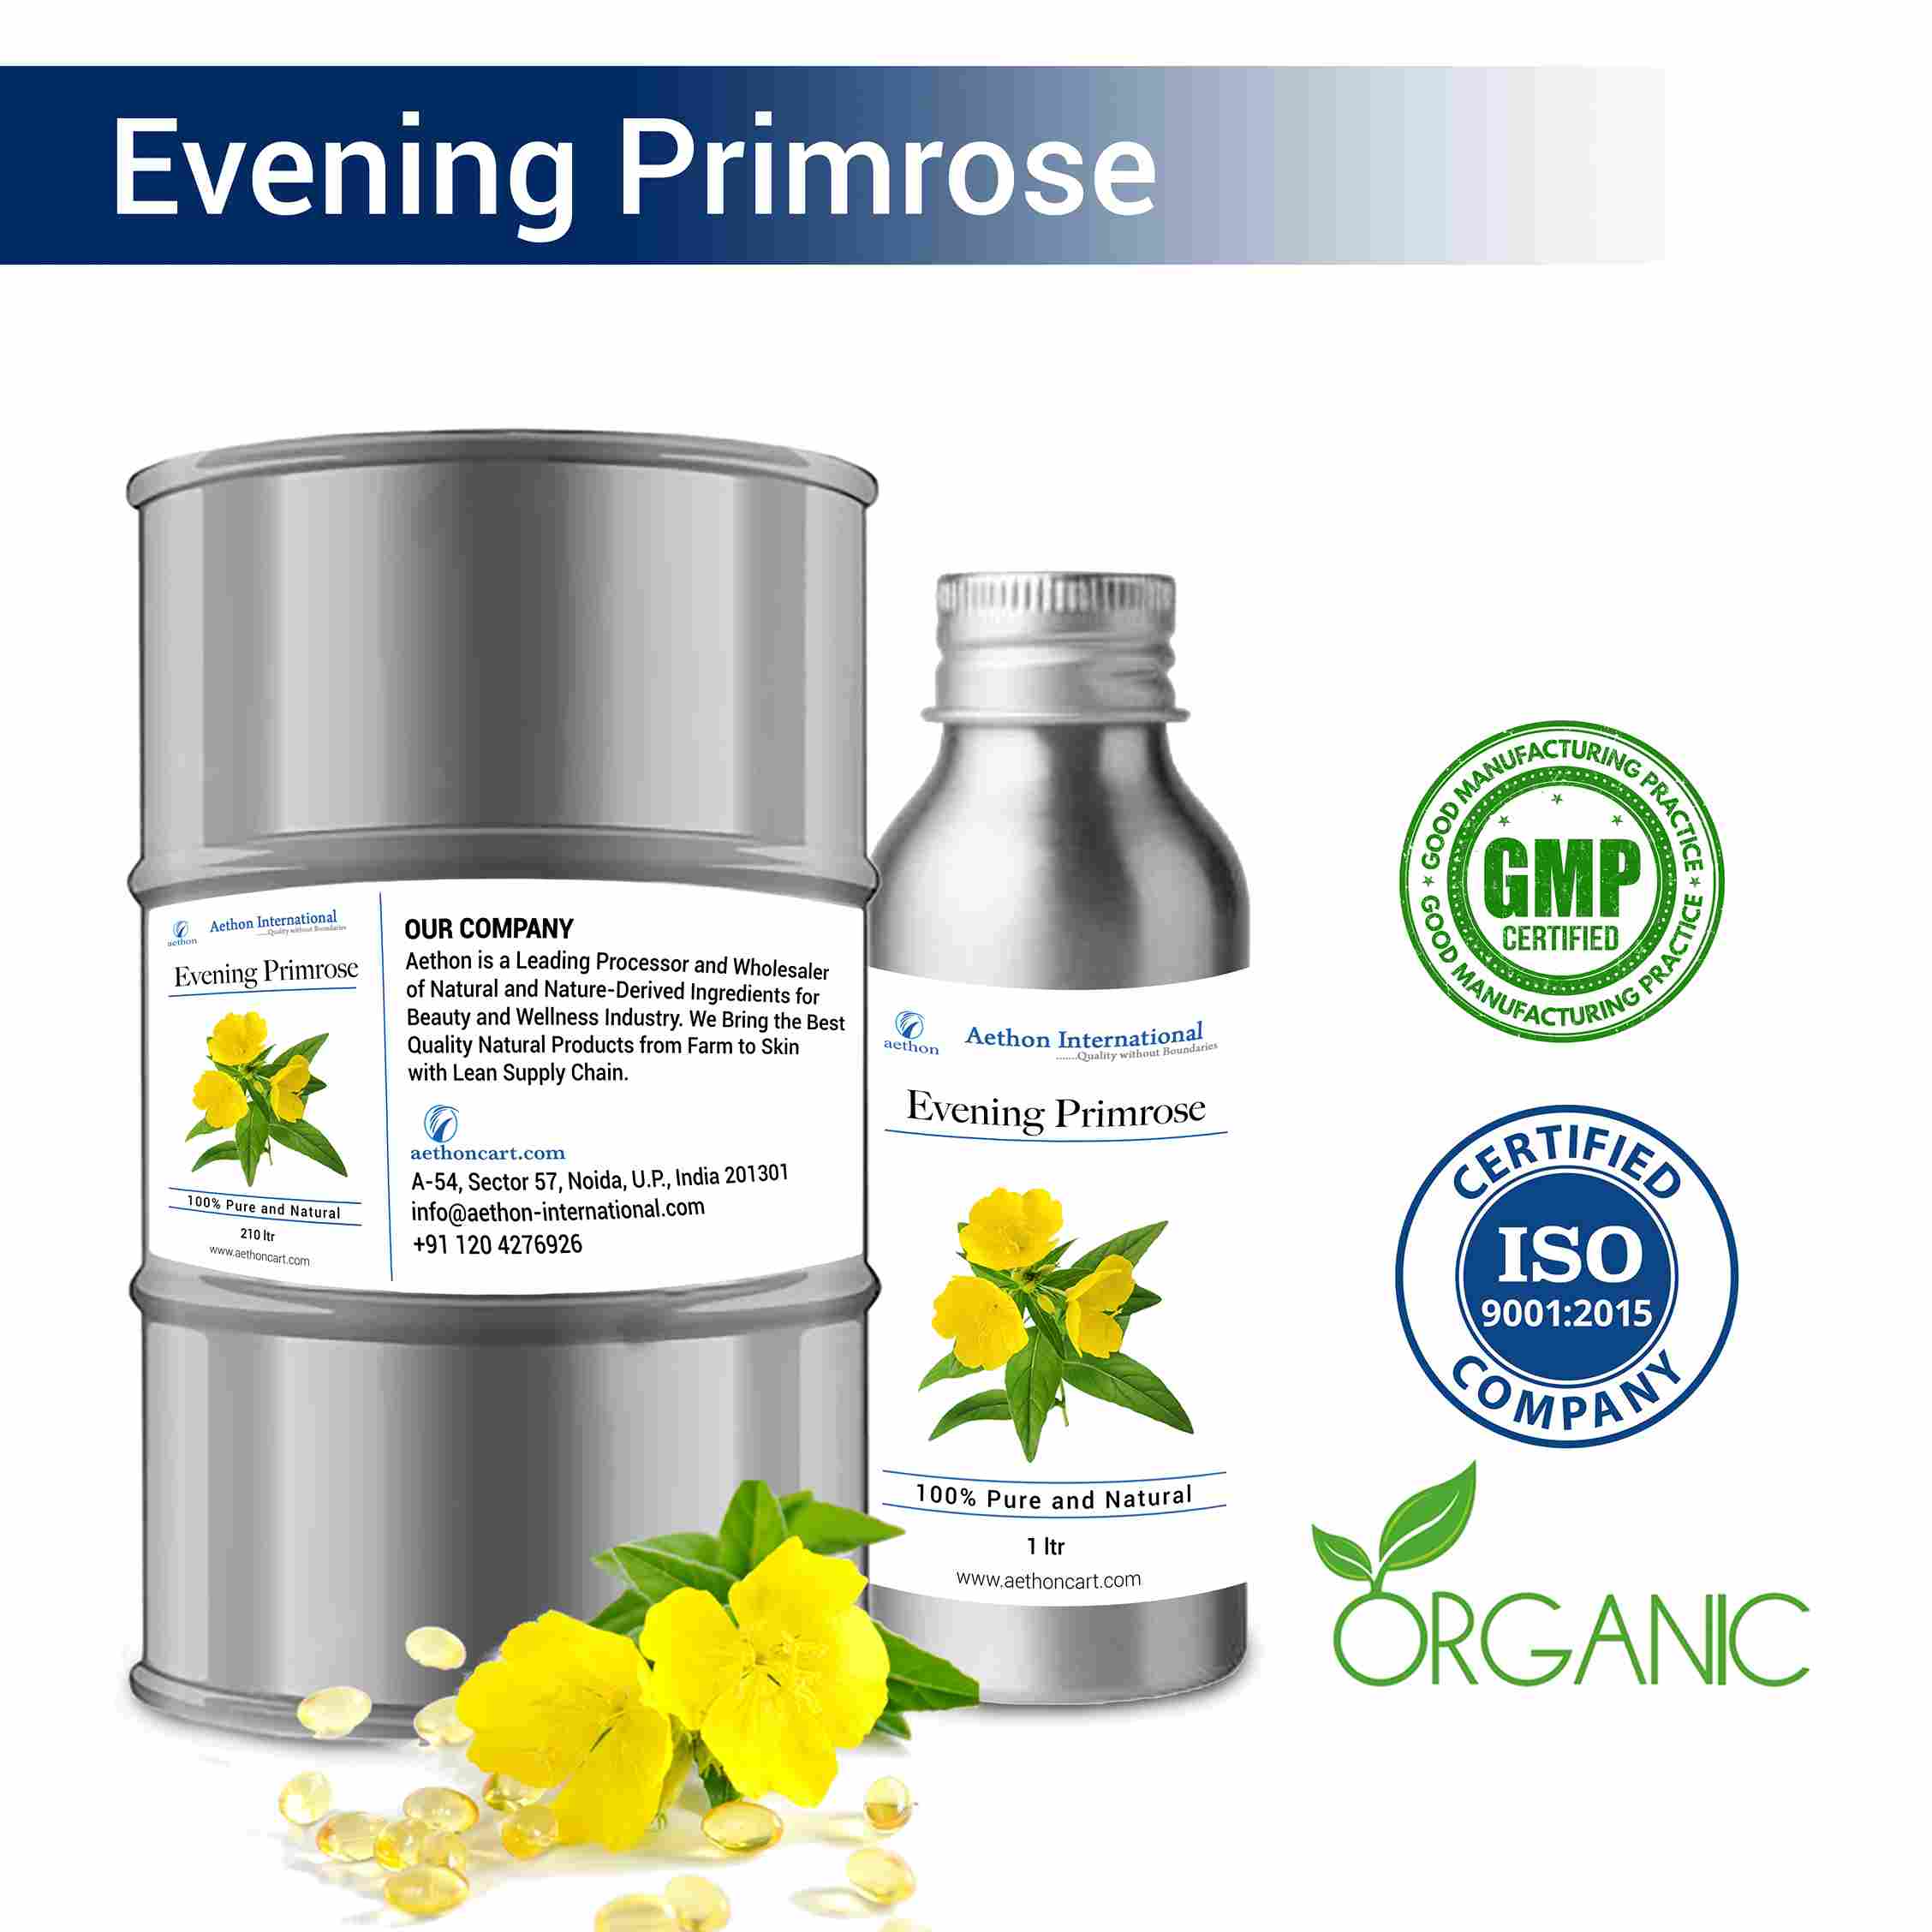 Evening Primrose